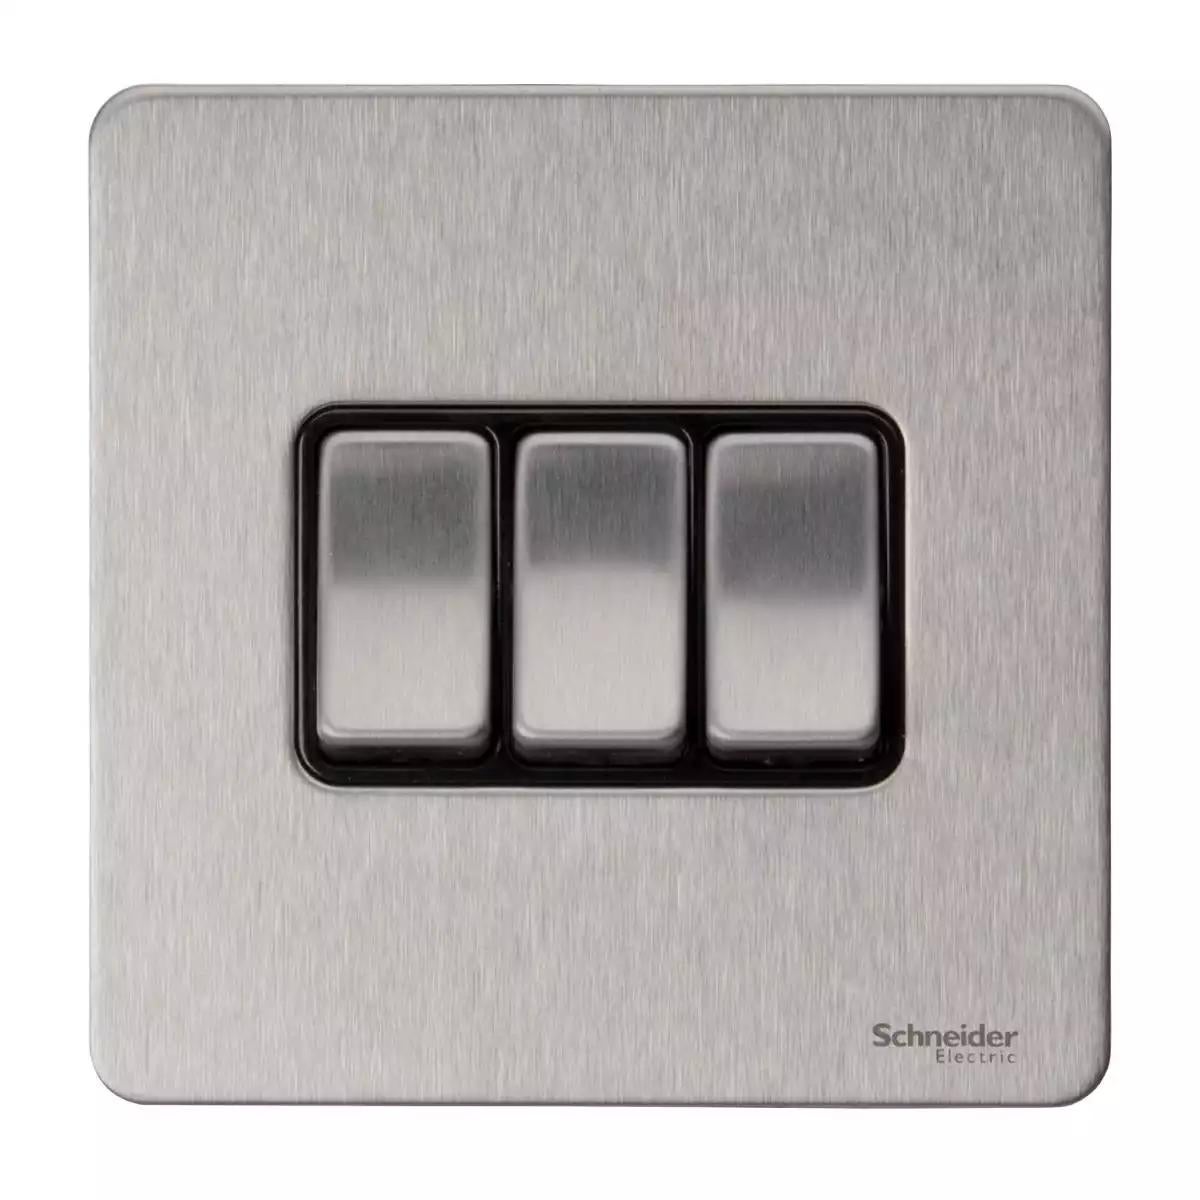 Ultimate Screwless flat plate - rocker plate switch - 3 gangs - stainless steel